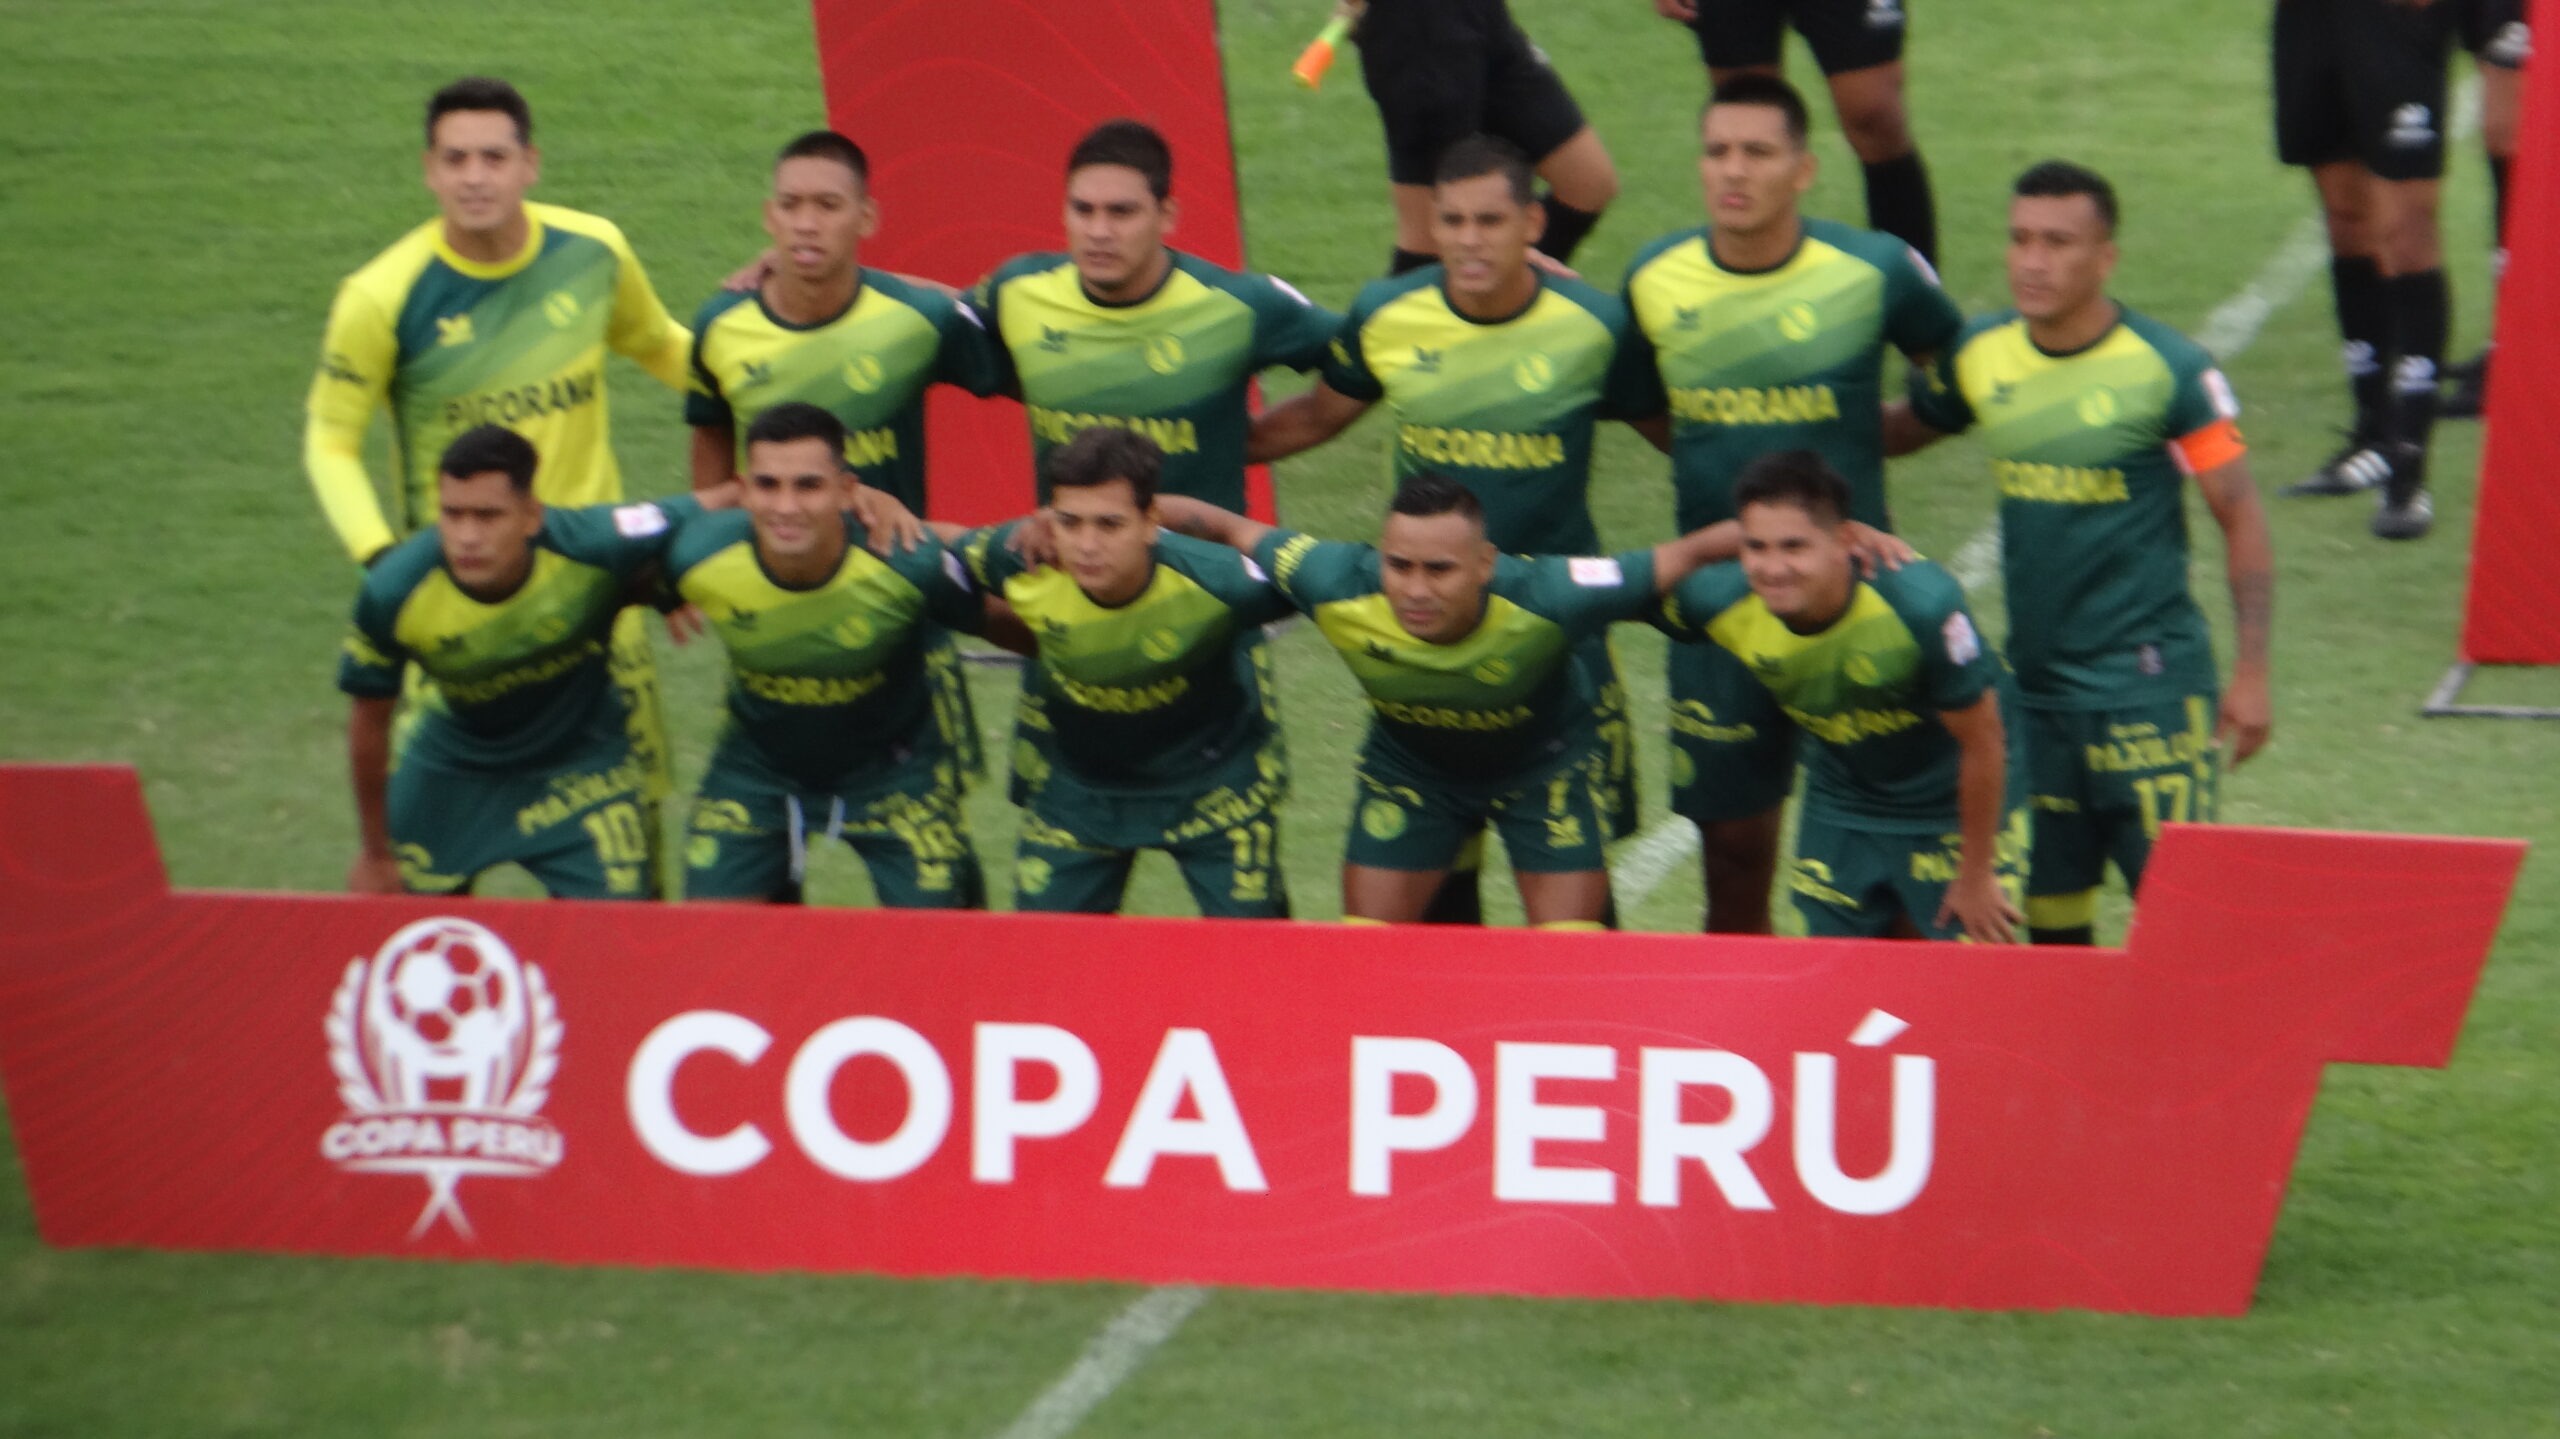 ADA Jaén, uno de los semifinalistas de la Copa Perú.